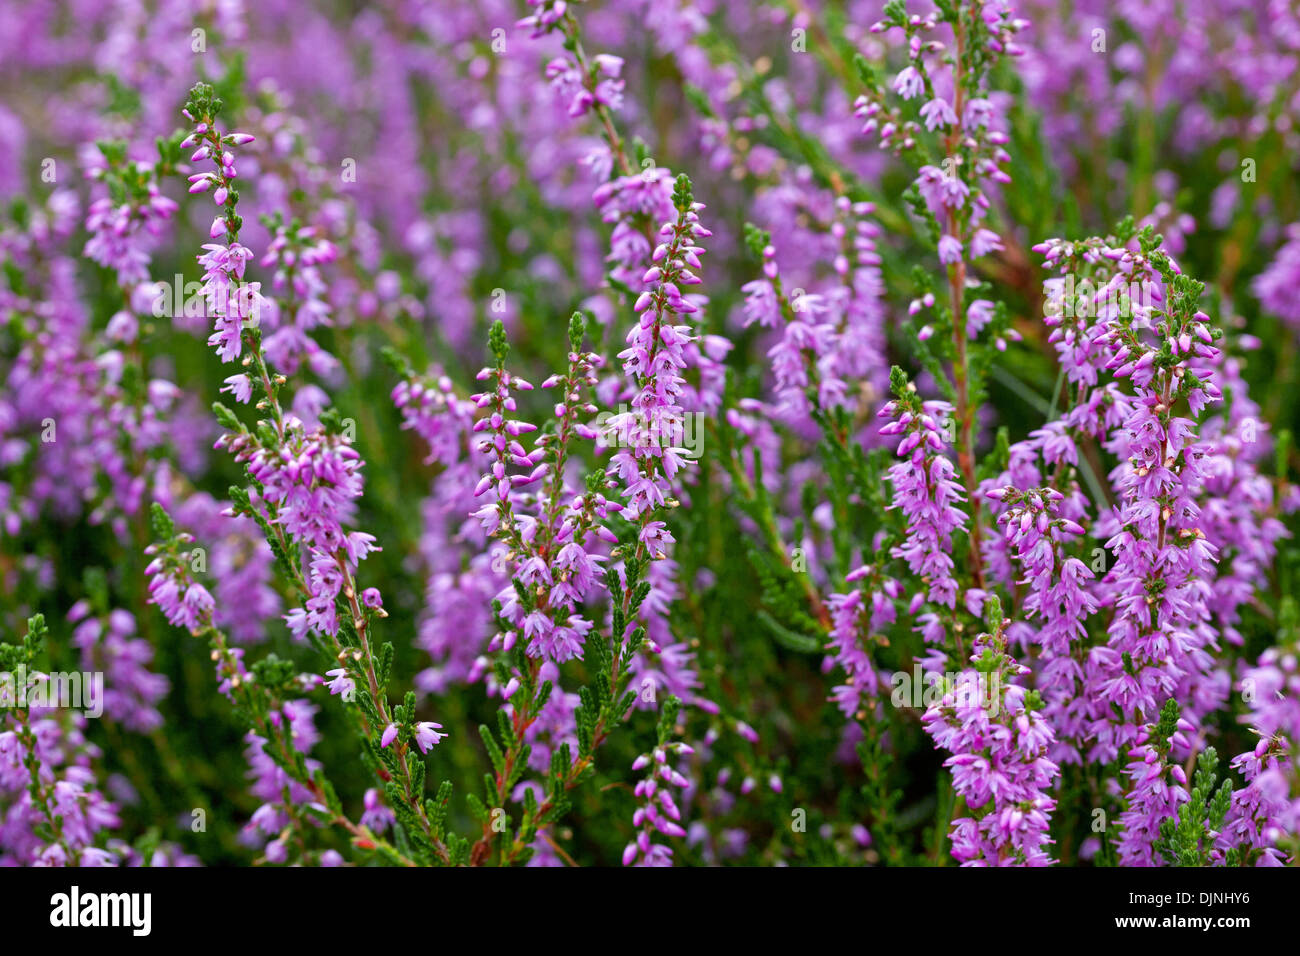 Common heather / ling (Calluna vulgaris) flowers flowering in summer in heathland / moor Stock Photo